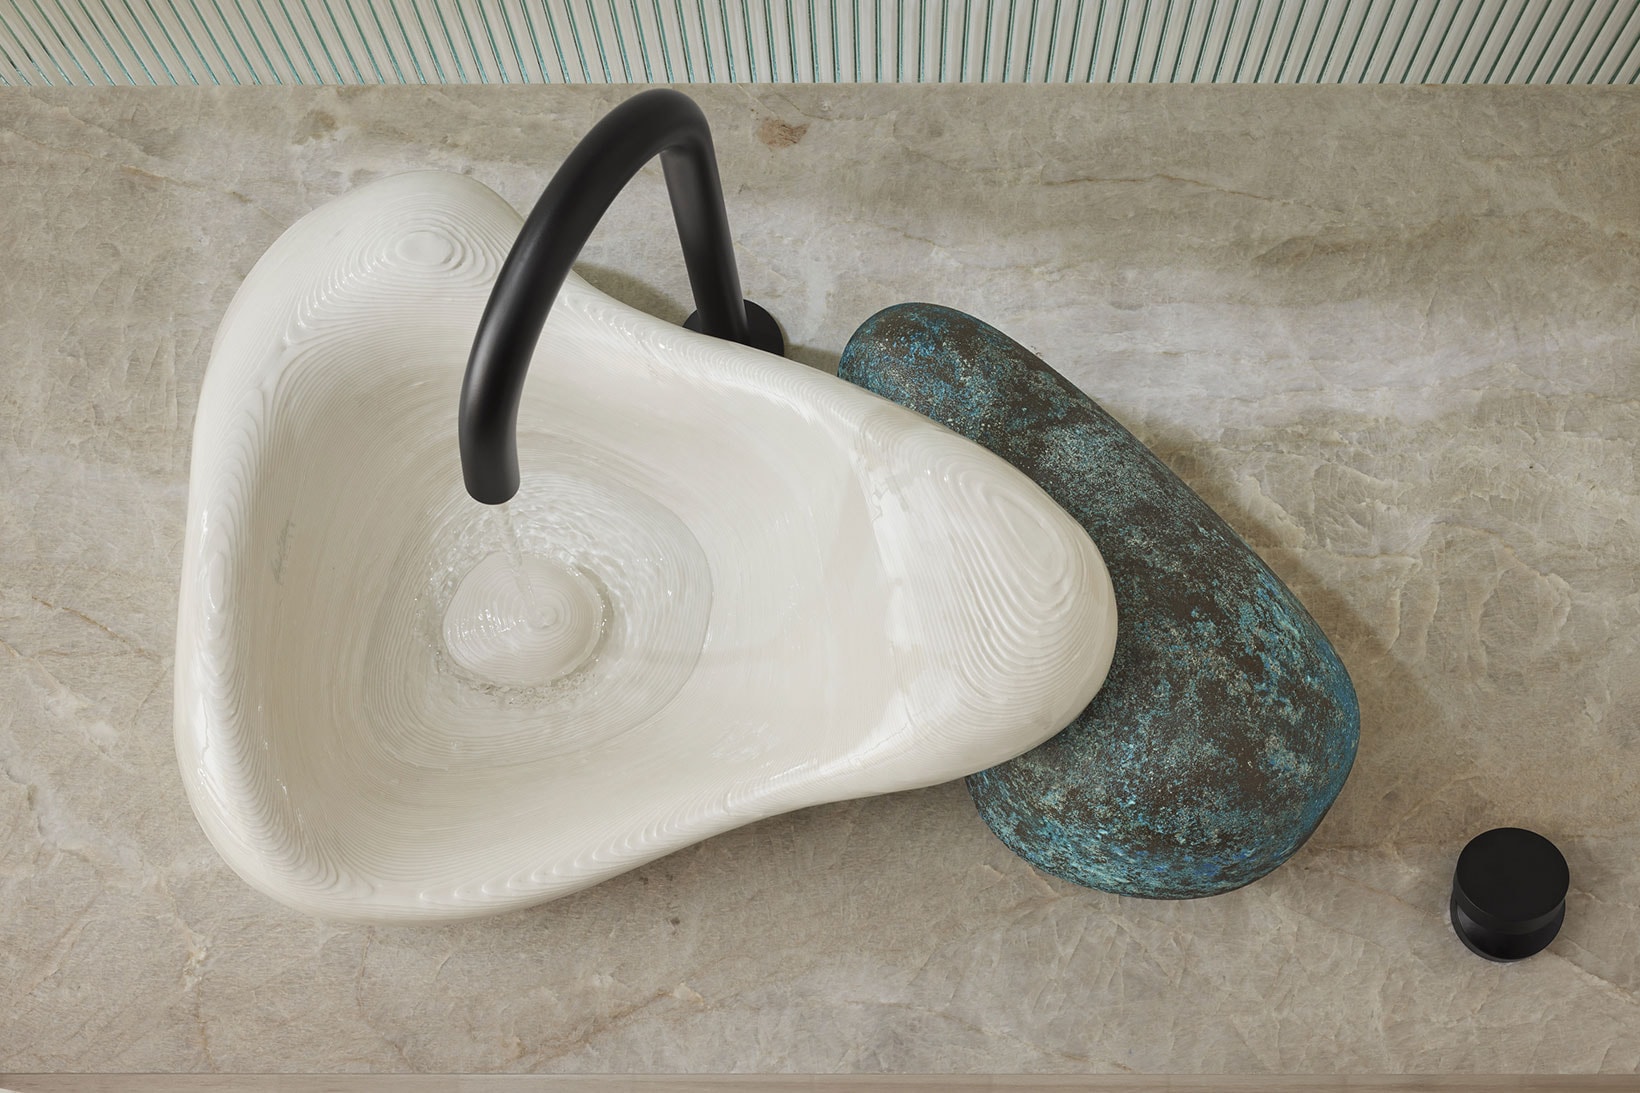 Daniel Arsham Kohler Rock.01 3D-Printed Bathroom Sink Design Details Faucet